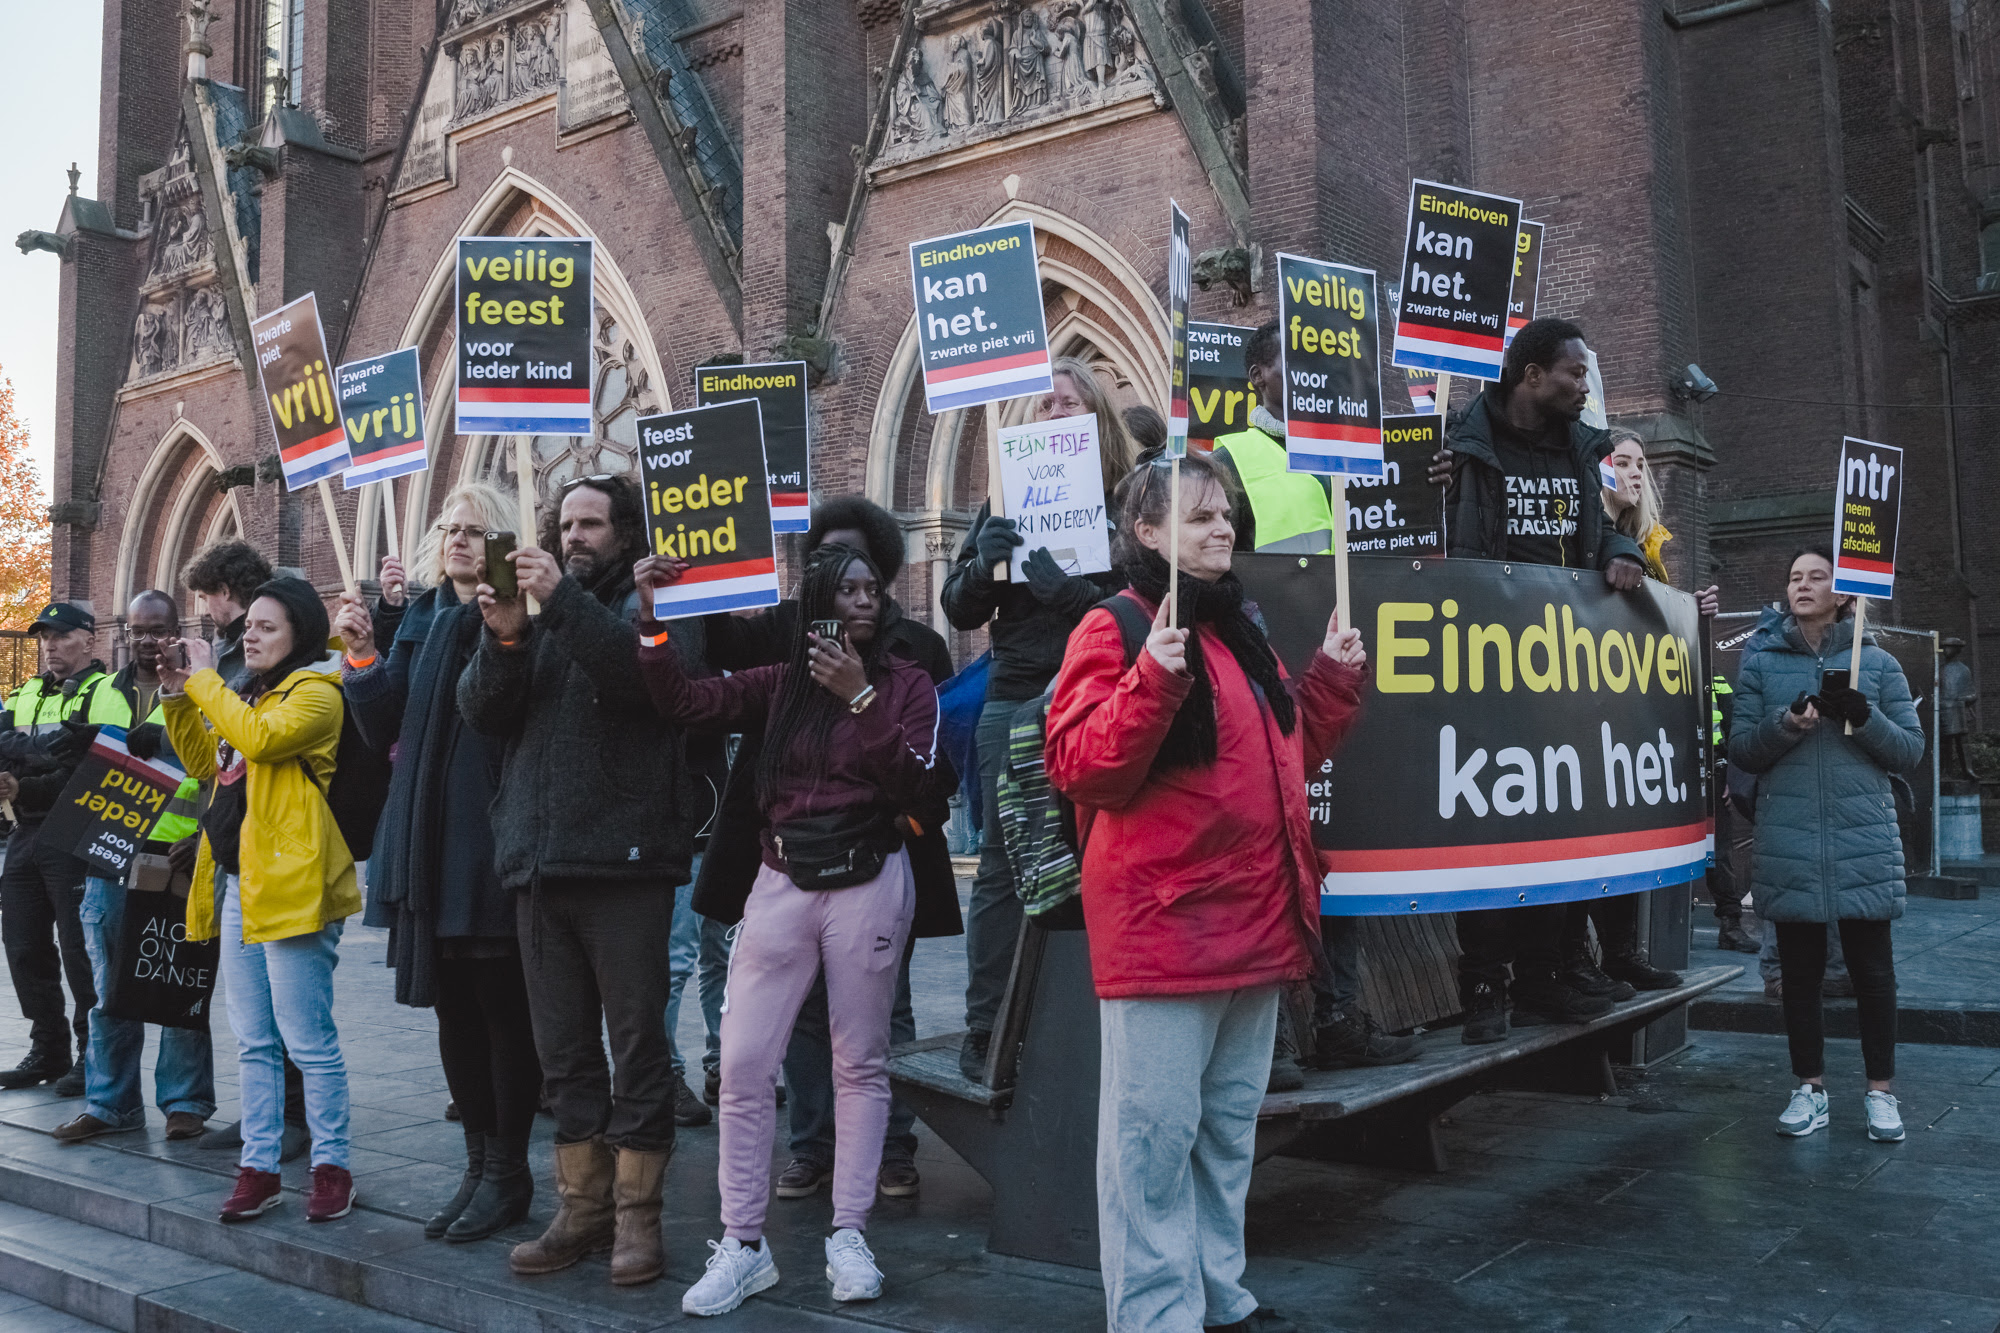 Pro-pietdemonstranten tijdens de Intocht van Sinterklaas in Eindhoven 2018